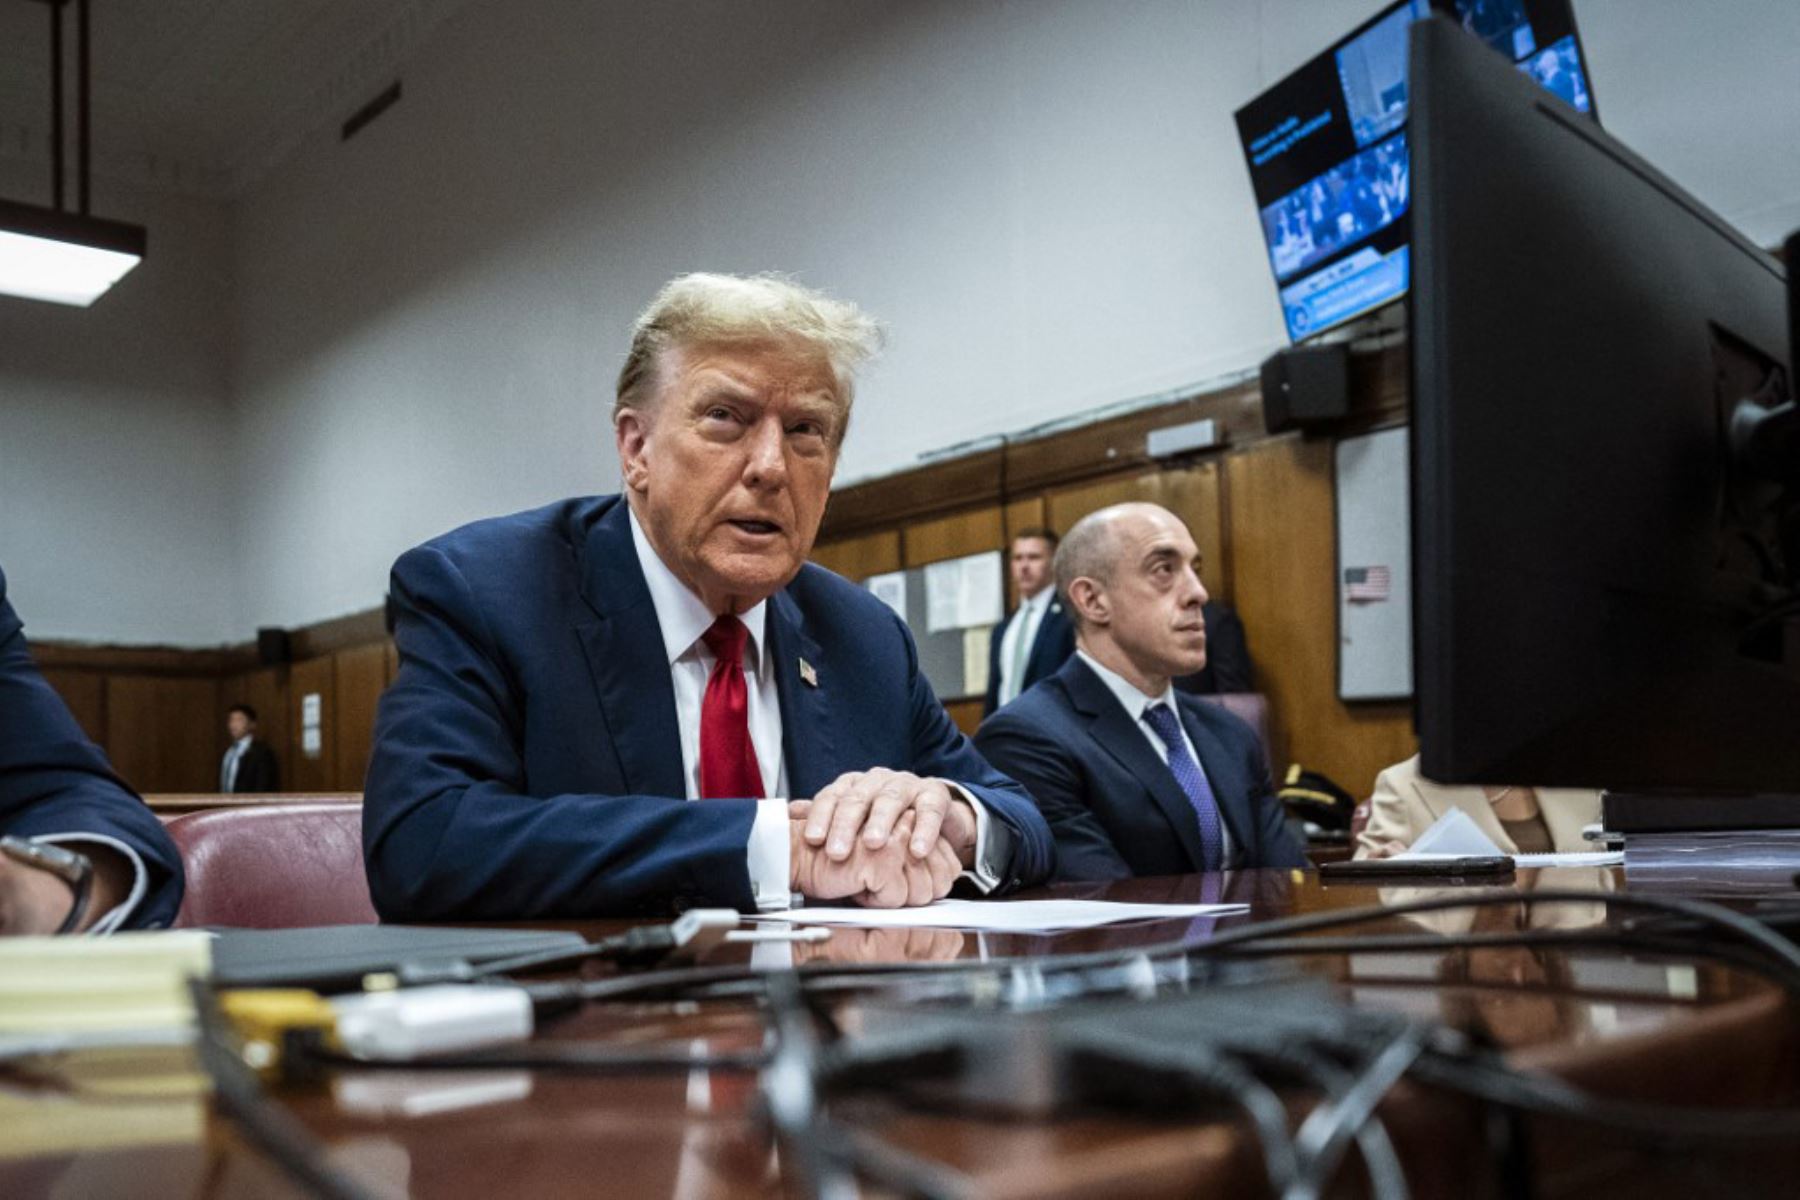 Donald Trump comparece ante el tribunal el lunes como el primer ex presidente estadounidense presidente alguna vez sea procesado penalmente. Foto: AFP